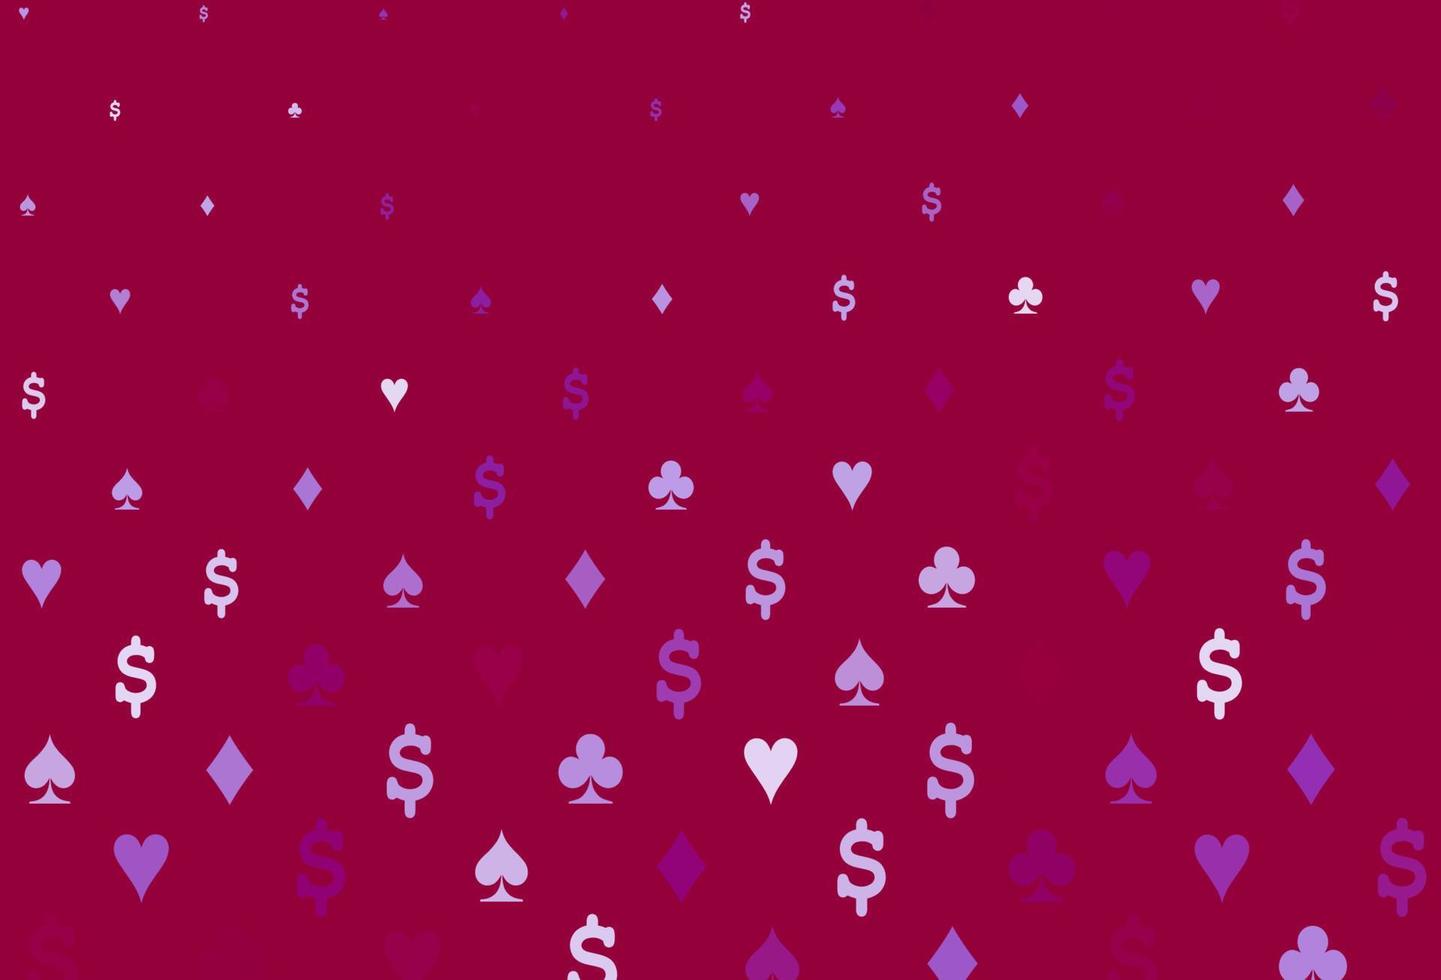 copertina vettoriale viola chiaro con simboli di gioco d'azzardo.